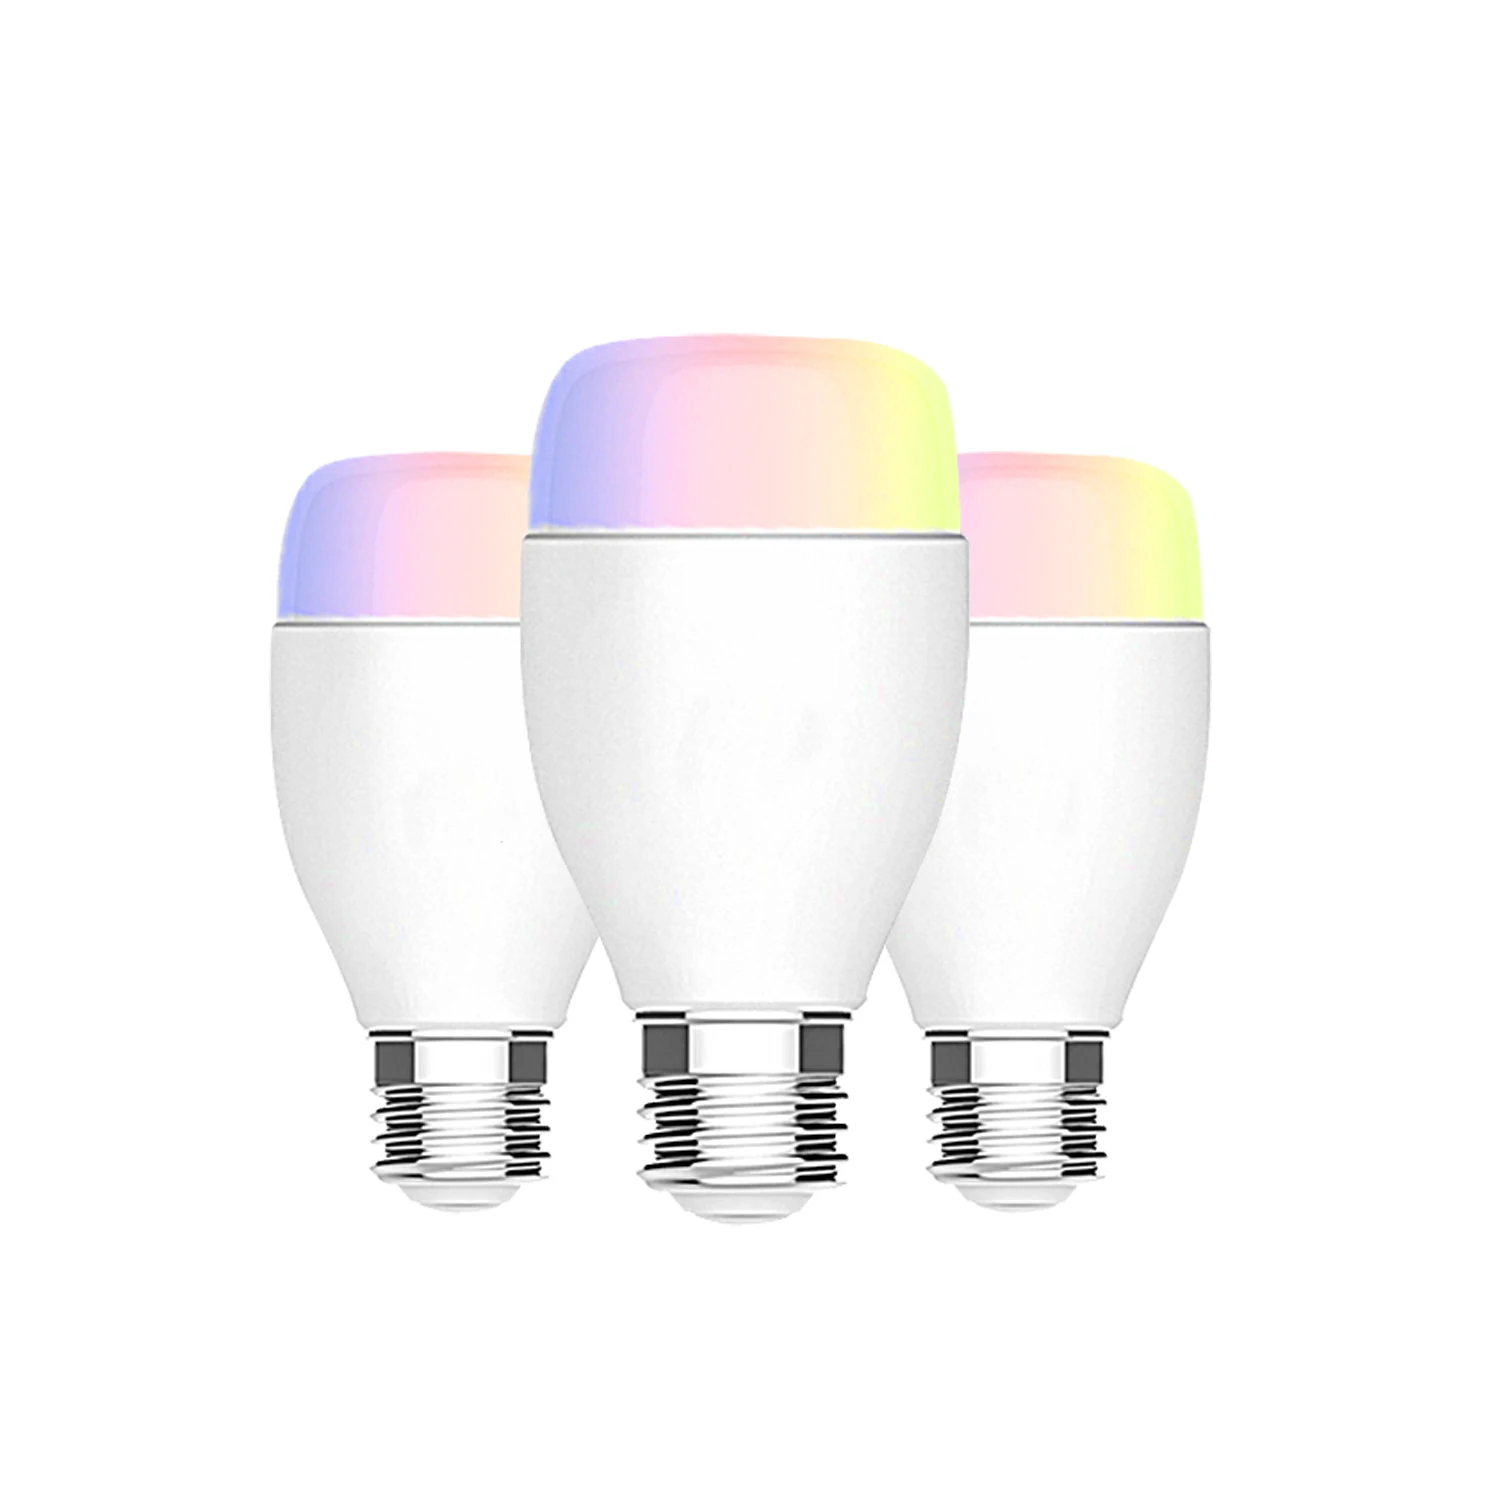 High Quality Smart LED Bulbs Wifi App Light Bulbs Rgb Colour Works With Alexa Google Home Mini IFTTT